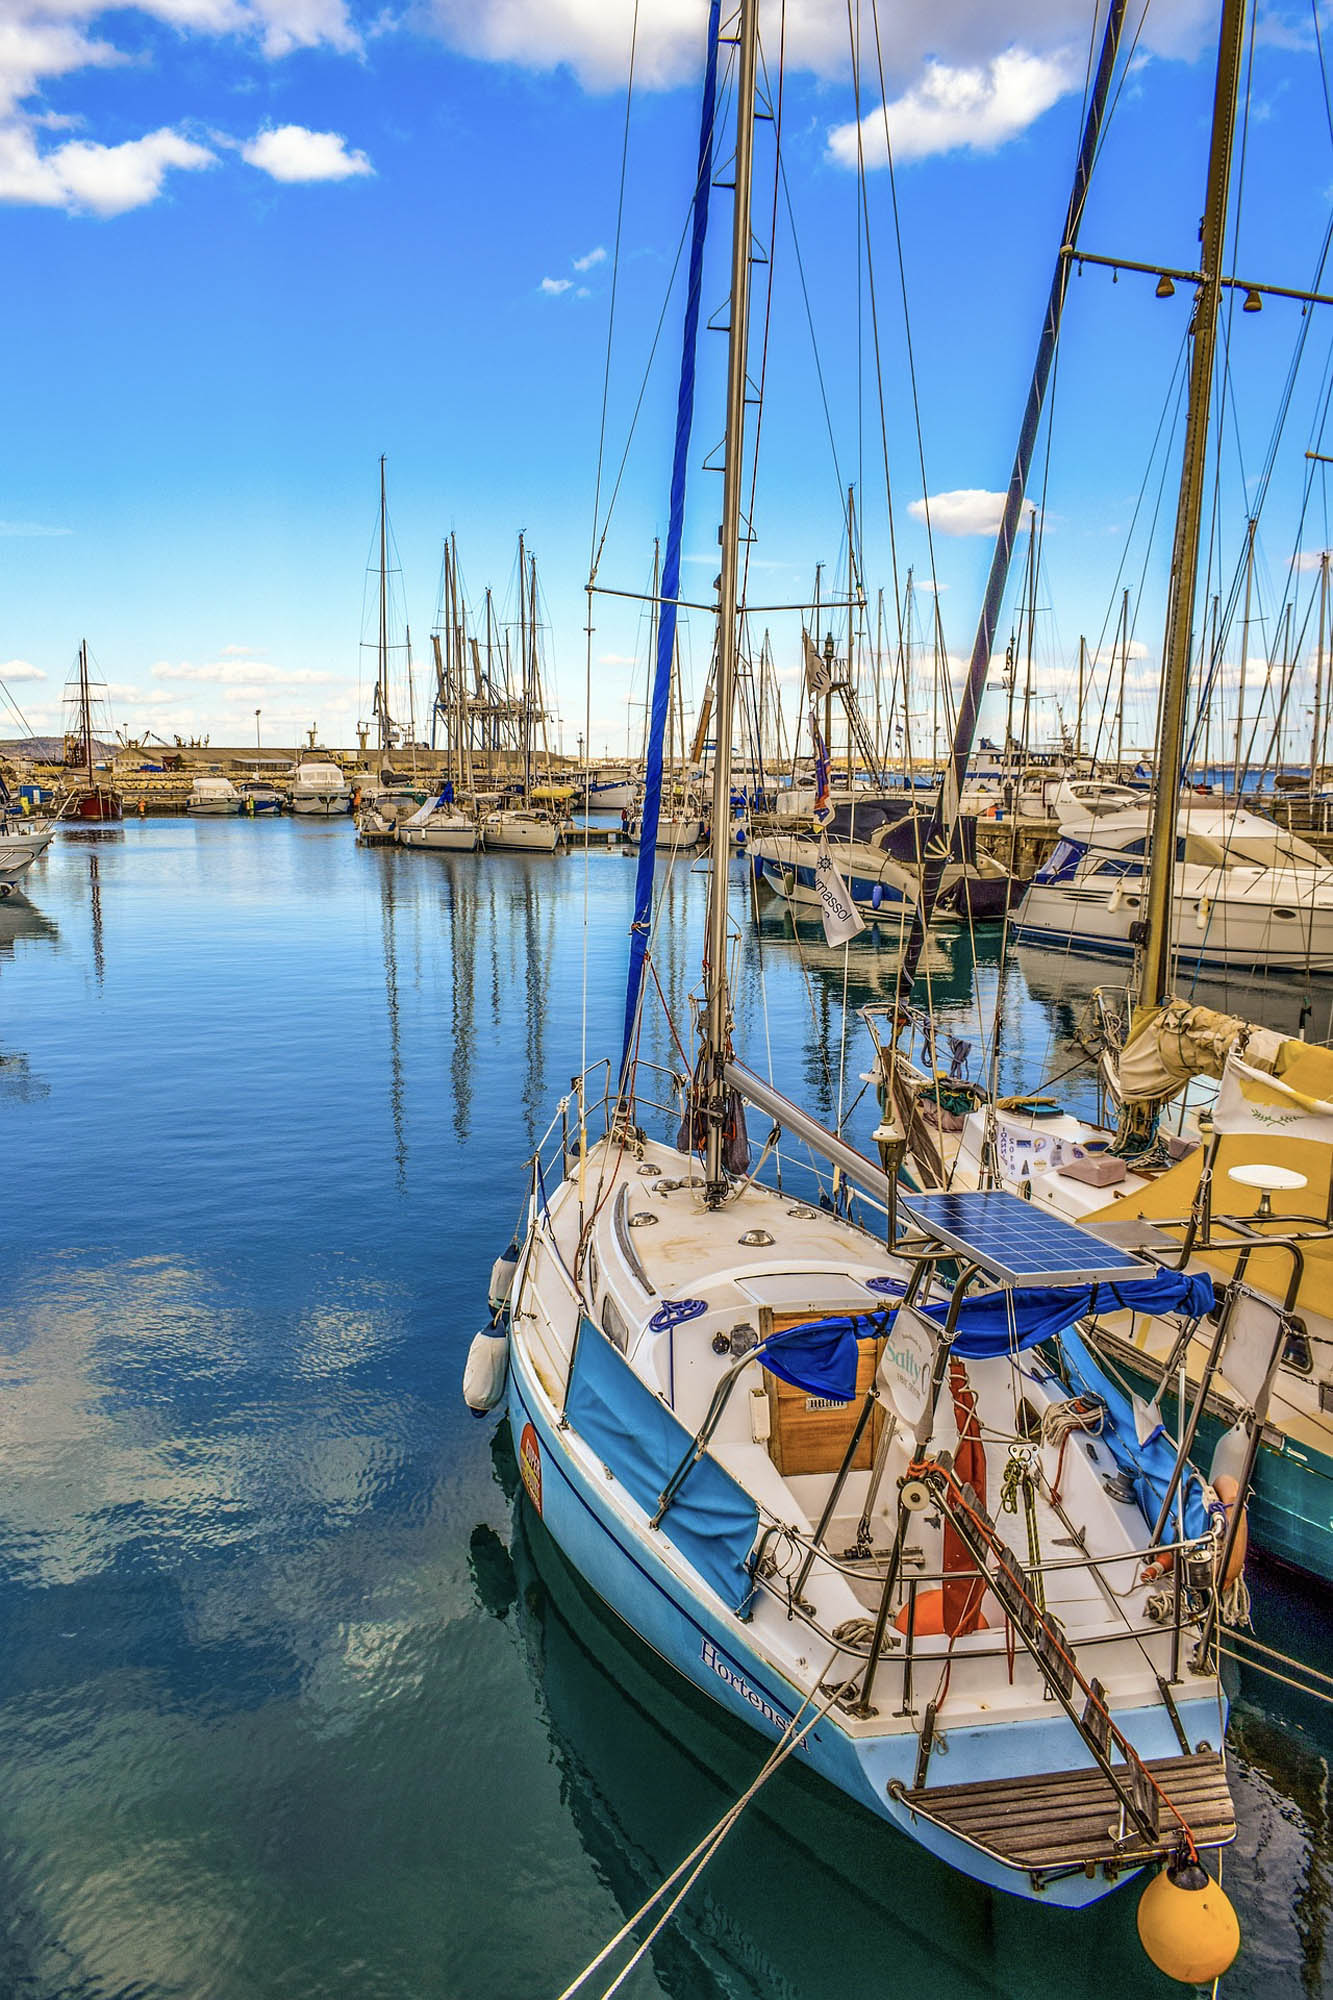 marina w Larnace, cyper, łódki kołyszą się na wodzie